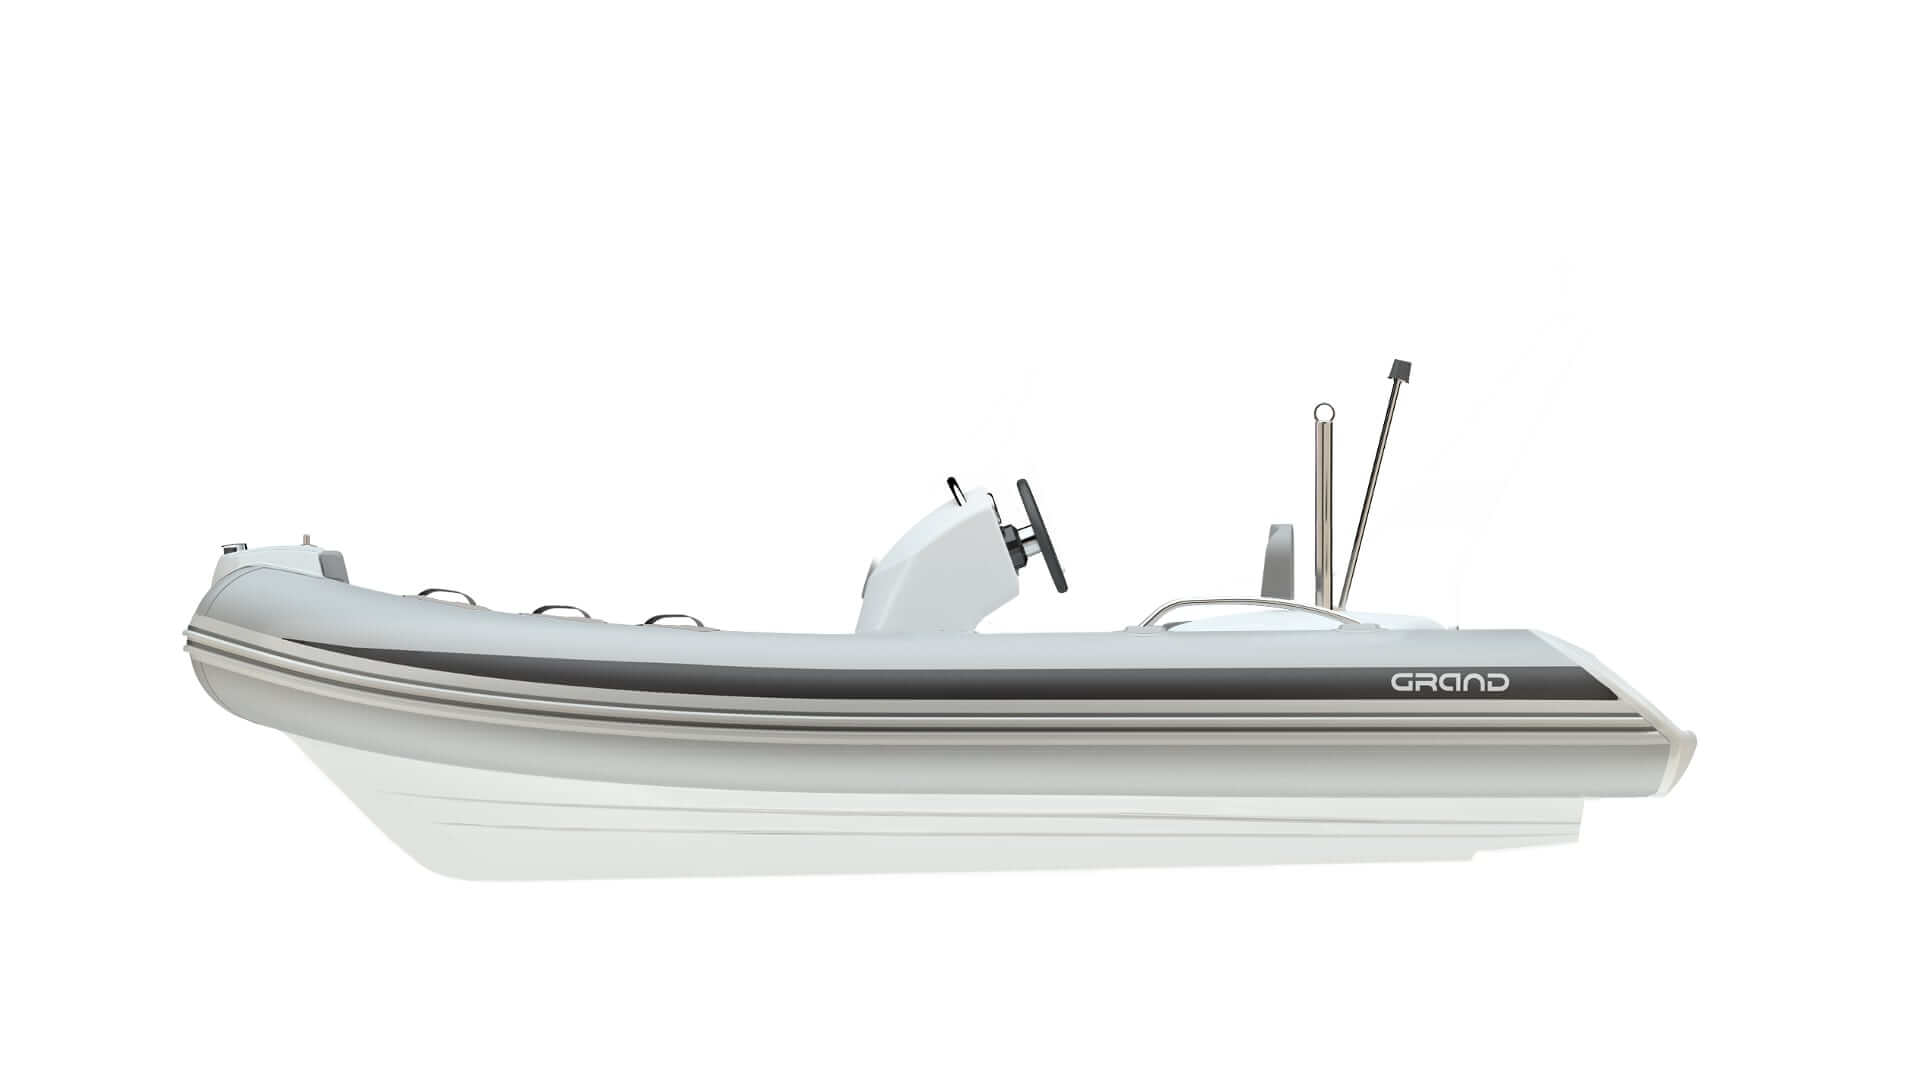 Надувная лодка GRAND Golden Line G480EF,  GRAND Golden Line G480EF,  GRAND G480EF, Надувная лодка GRAND Golden Line G480,  GRAND Golden Line G480,  GRAND G480, Надувная лодка GRAND, Надувная лодка с жестким дном,  Rigid Inflatable Boats, RIB